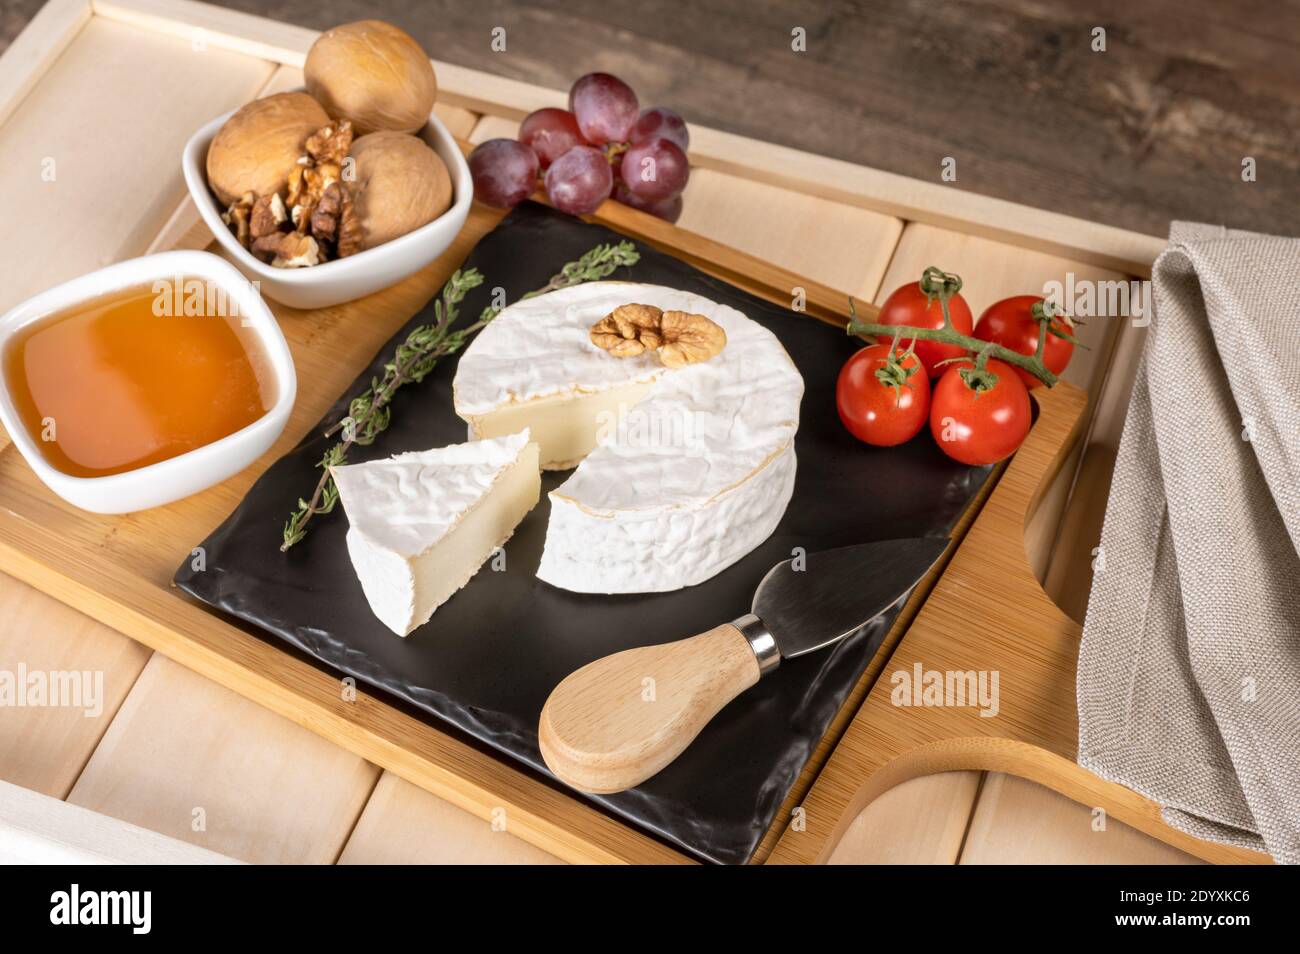 Holztablett zum Frühstück mit Brie-Käse, Honig, Walnüssen, Tomaten. Käse Frühstück auf dem Holztablett mit schwarzem Teller Stockfoto